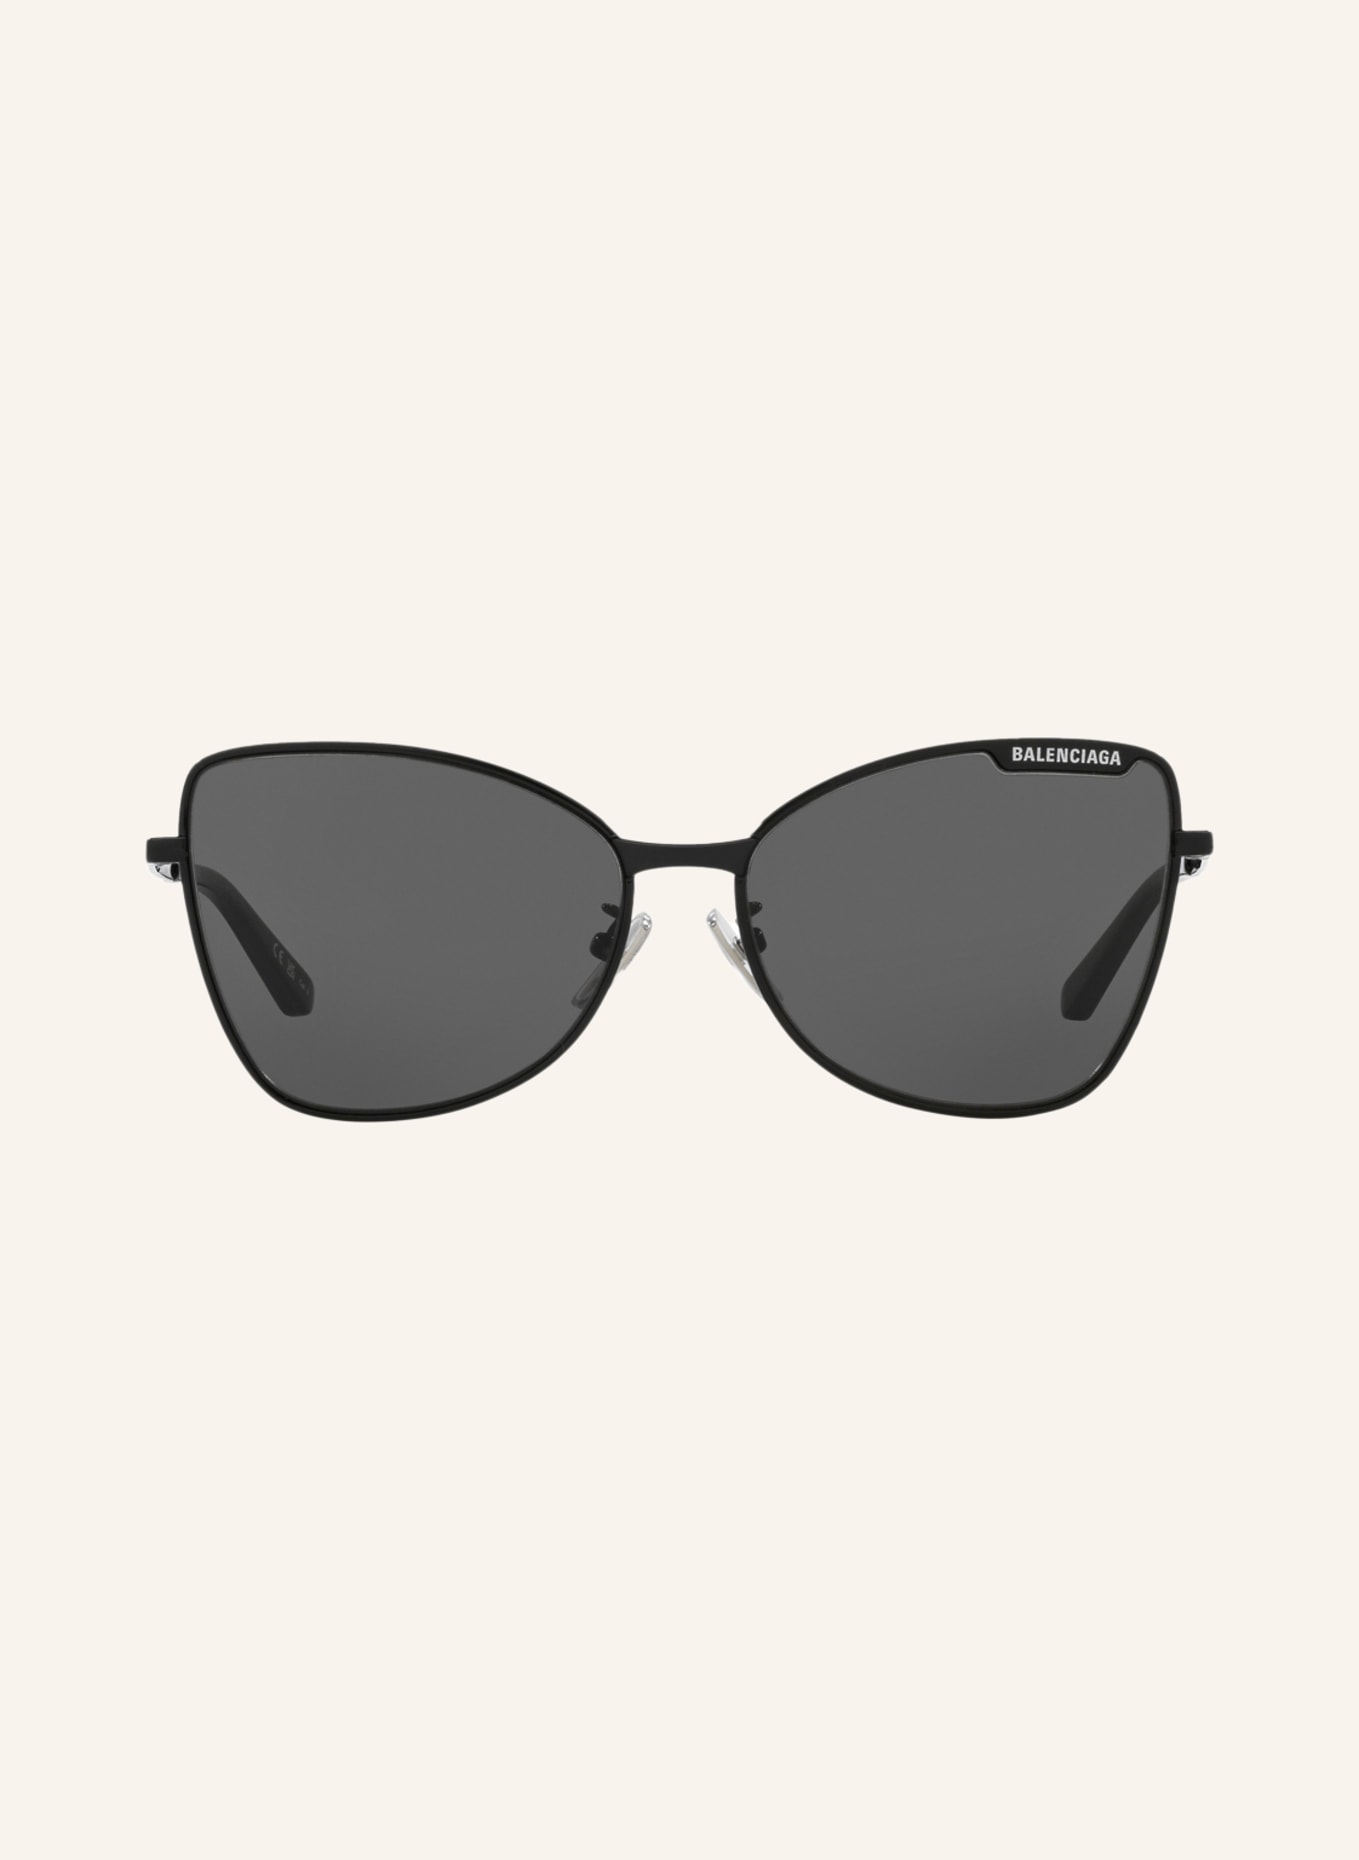 BALENCIAGA Sunglasses BB0278S, Color: 1100L1 - BLACK/DARK GRAY (Image 2)